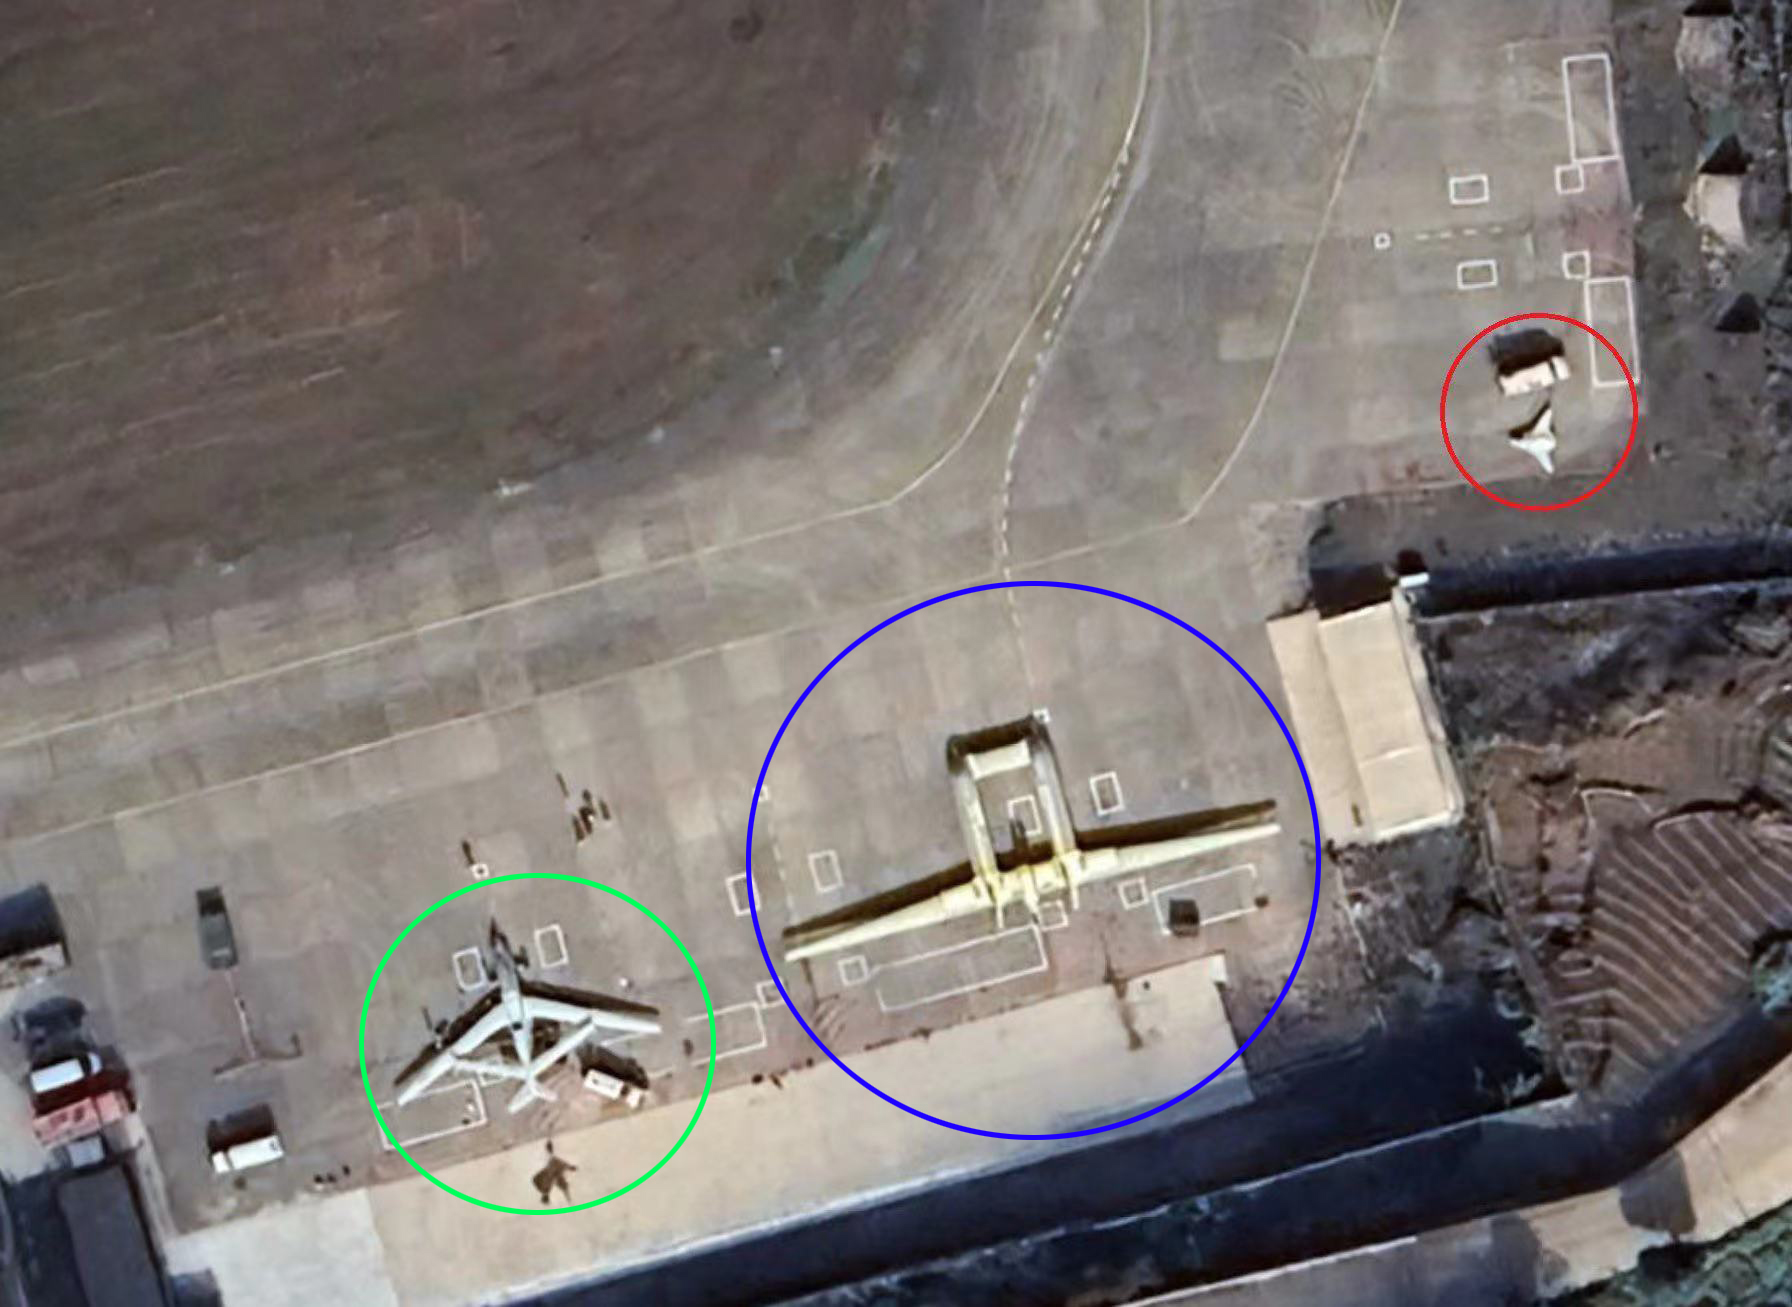 WZ-7 (khoanh tròn màu xanh lá cây), máy bay không người lái AWACS Divine Eagle (màu xanh lam) và một UCAV không xác định (màu đỏ) được nhìn thấy trong ảnh vệ tinh. Nguồn: X (trước đây là Twitter)